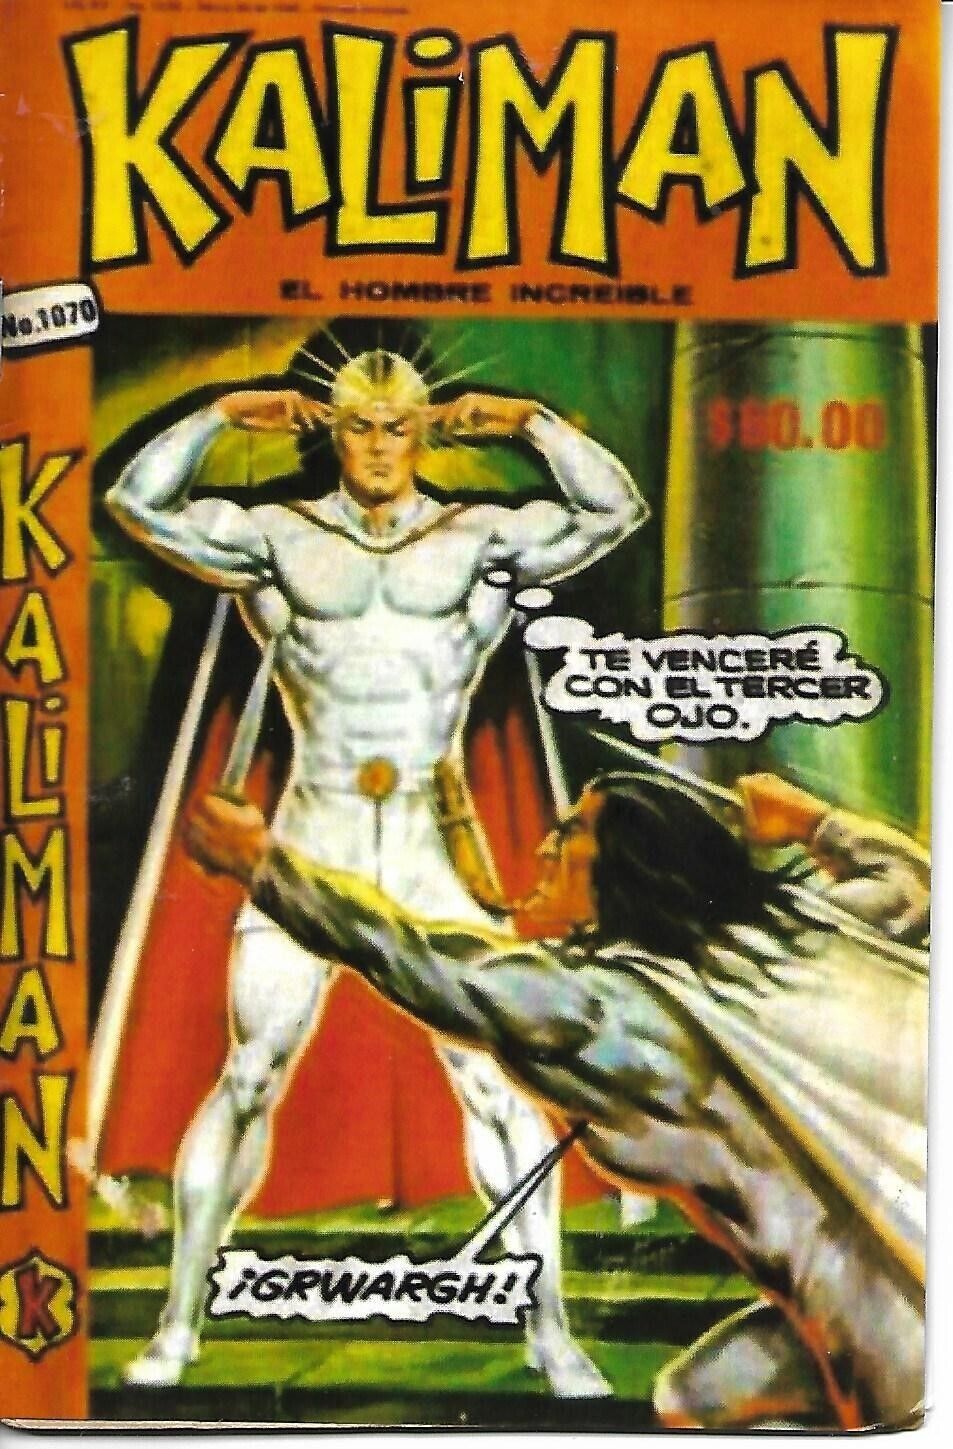 Kaliman El Hombre Increible #1070 - Mayo 30, 1986